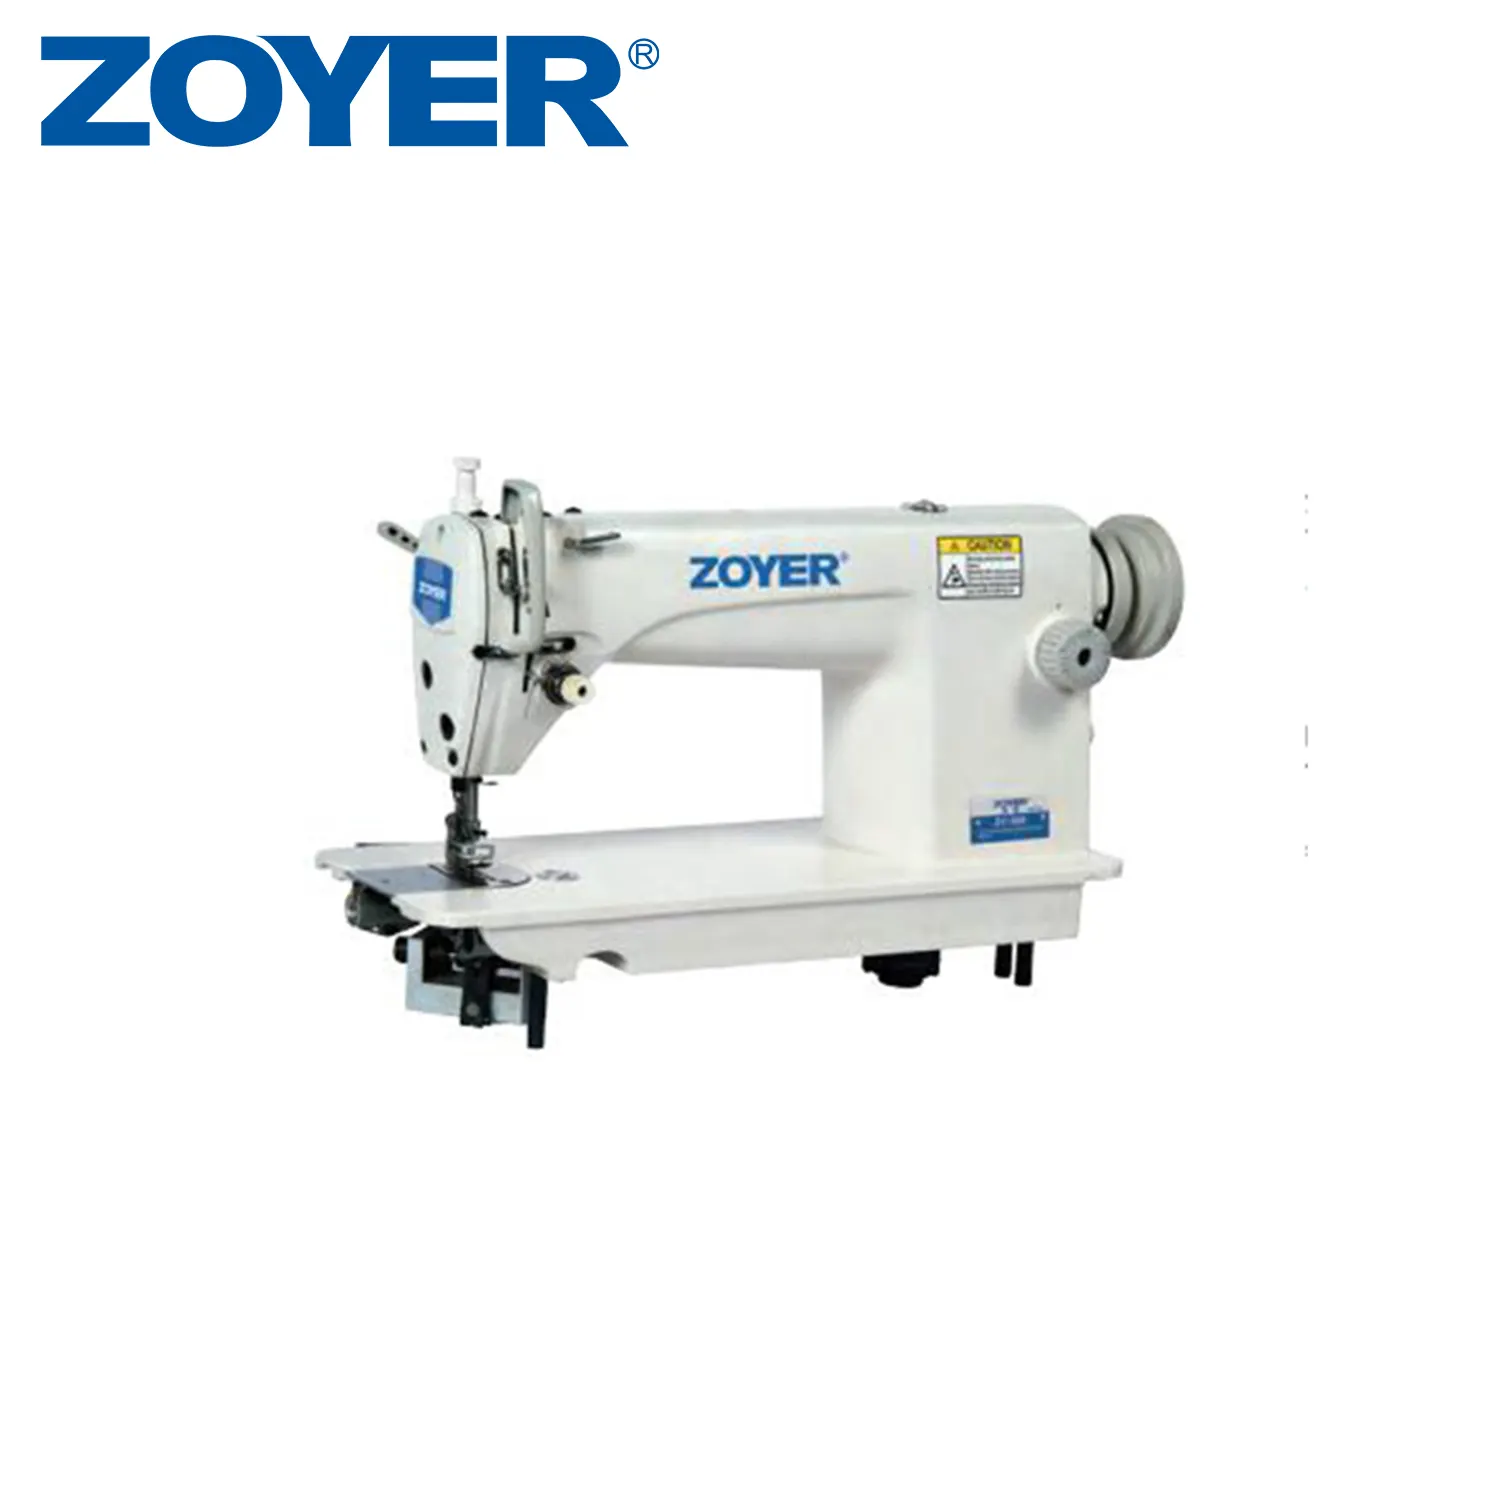 ZY388 Zoyer Industrielle Handstich-Nähmaschine Automatisch mit programmier barem elektronischem Betrieb für Werks farmen